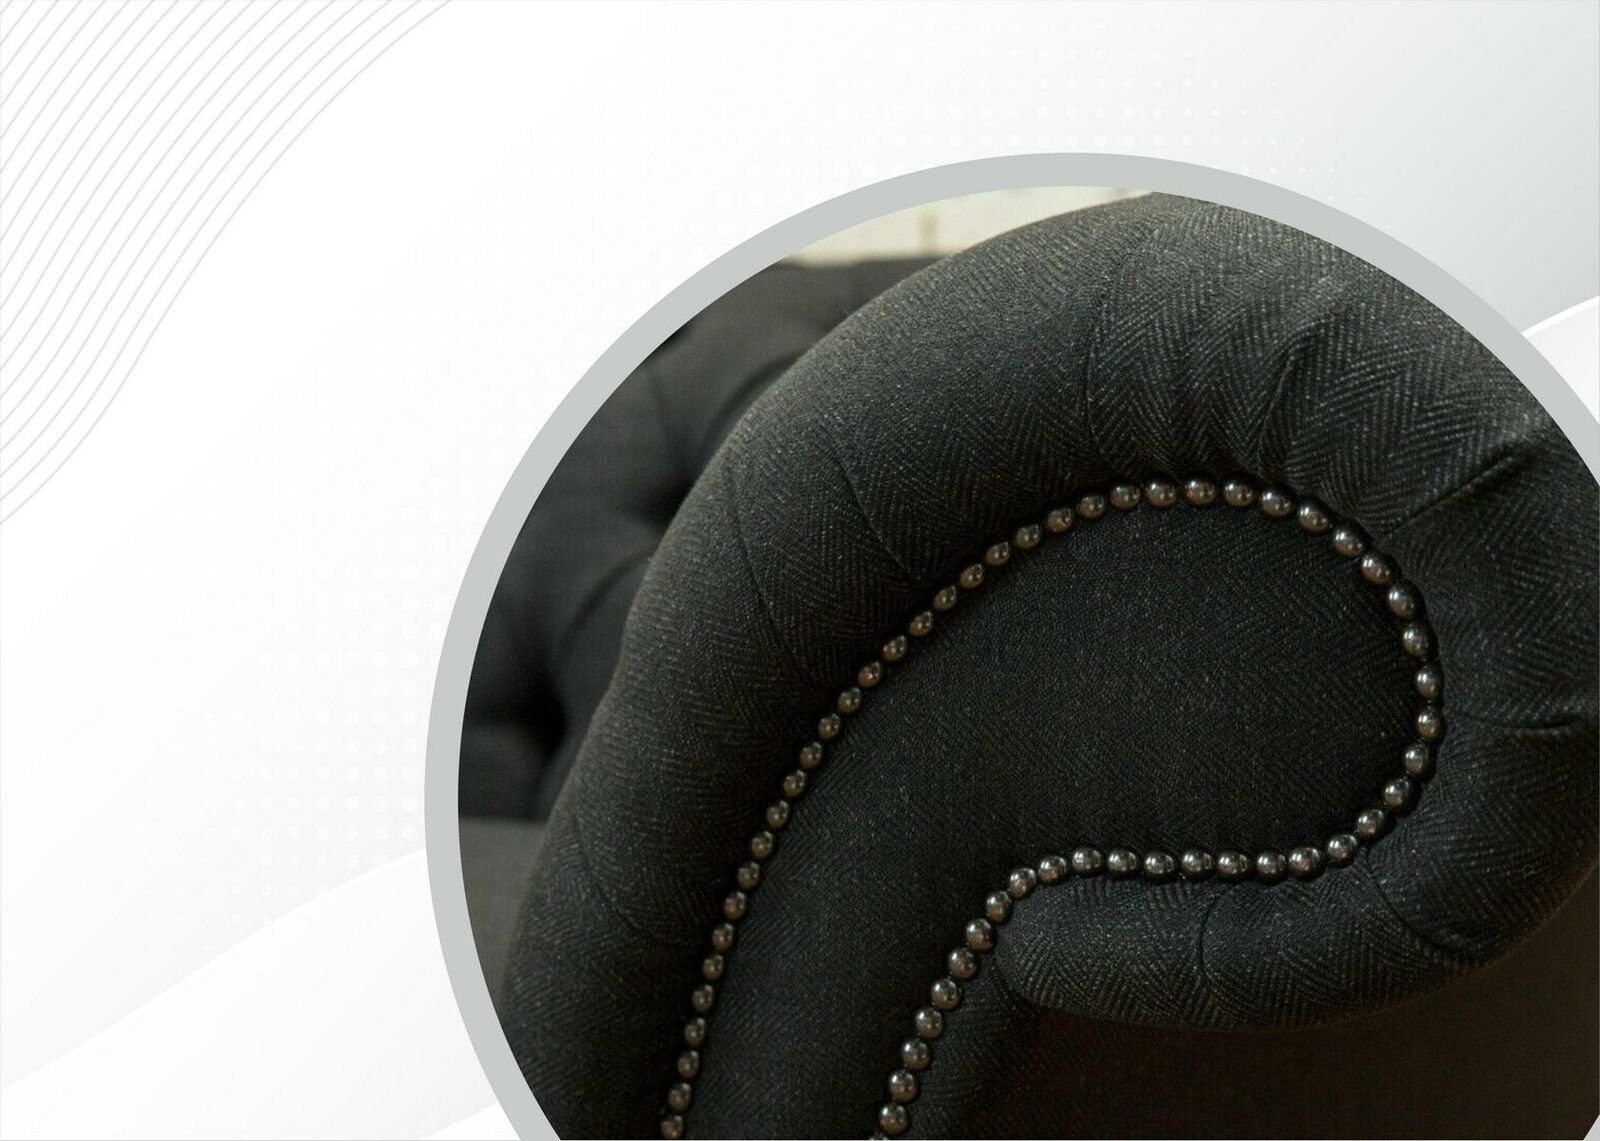 Dreisitzer in Dunkelgrauer Chesterfield Chesterfield-Sofa 3-Sitzer Möbel Neu, Made luxus JVmoebel Europe